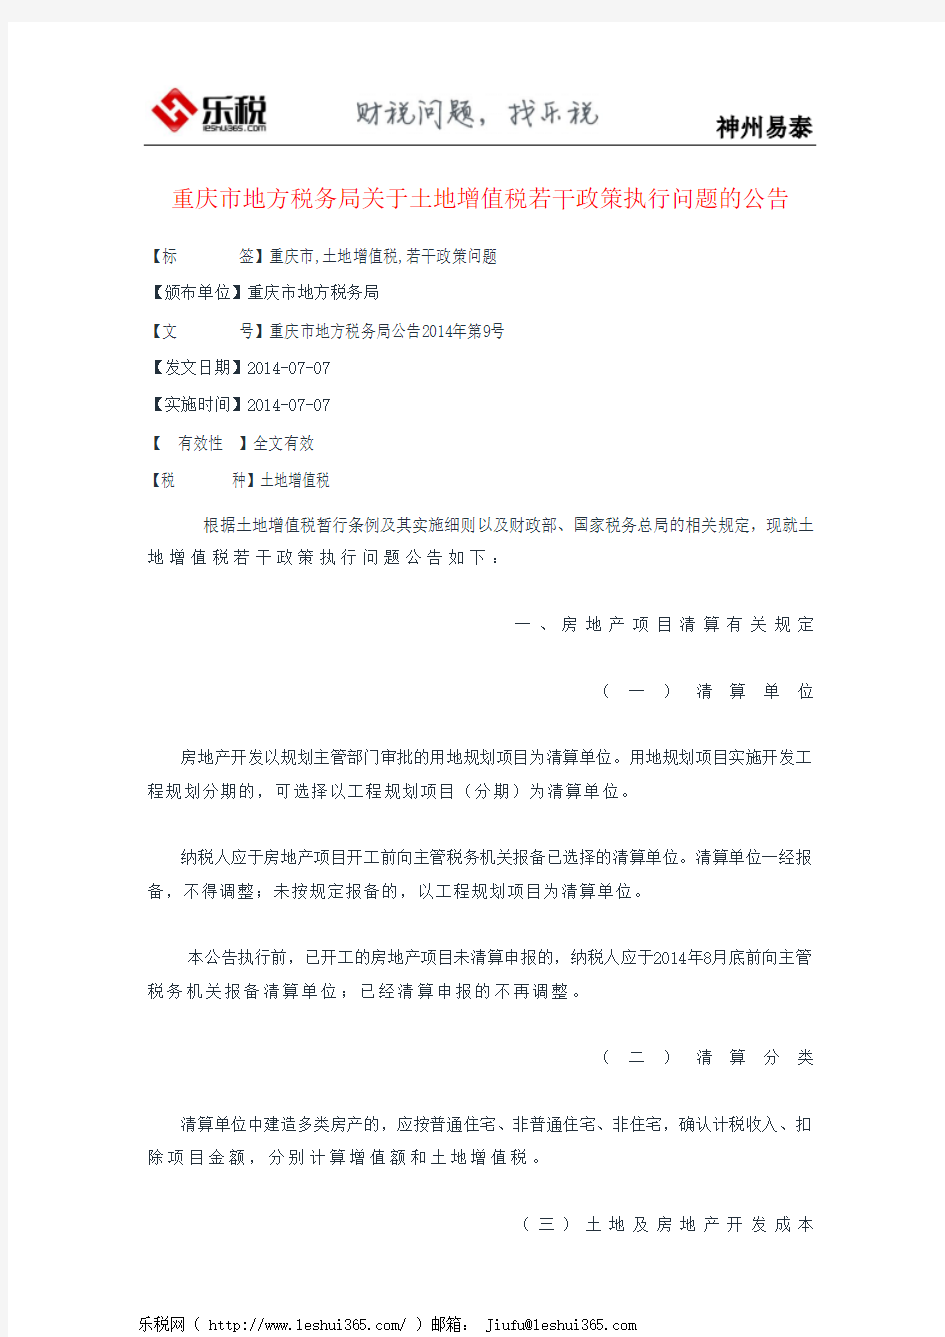 重庆市地方税务局关于土地增值税若干政策执行问题的公告